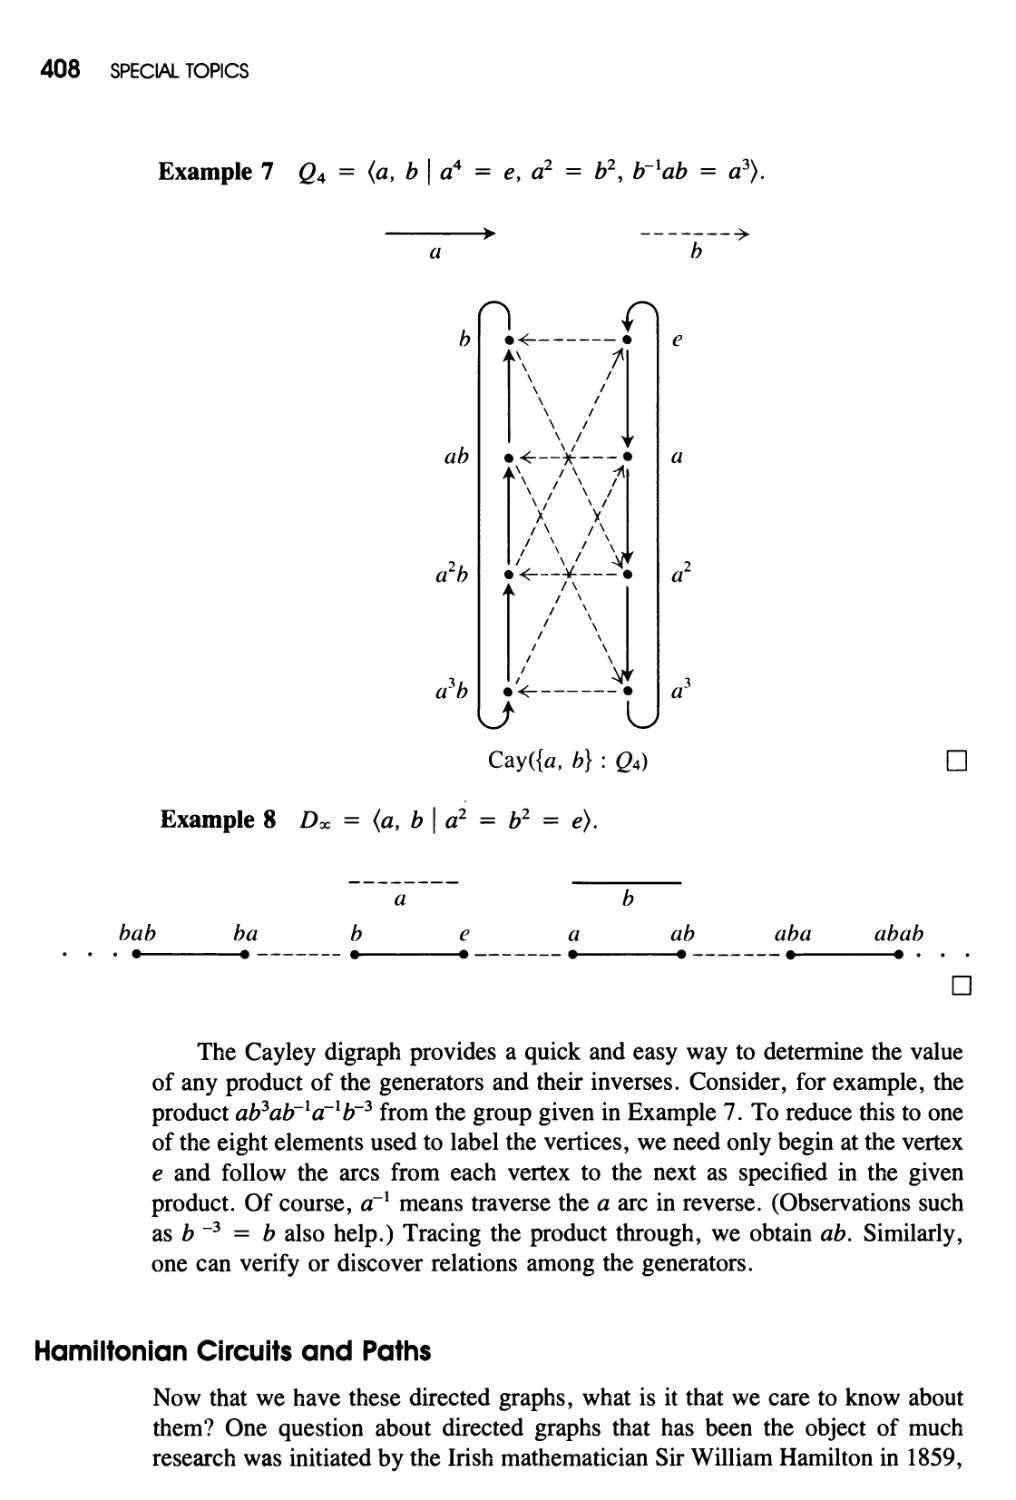 Hamiltonian Circuits and Paths